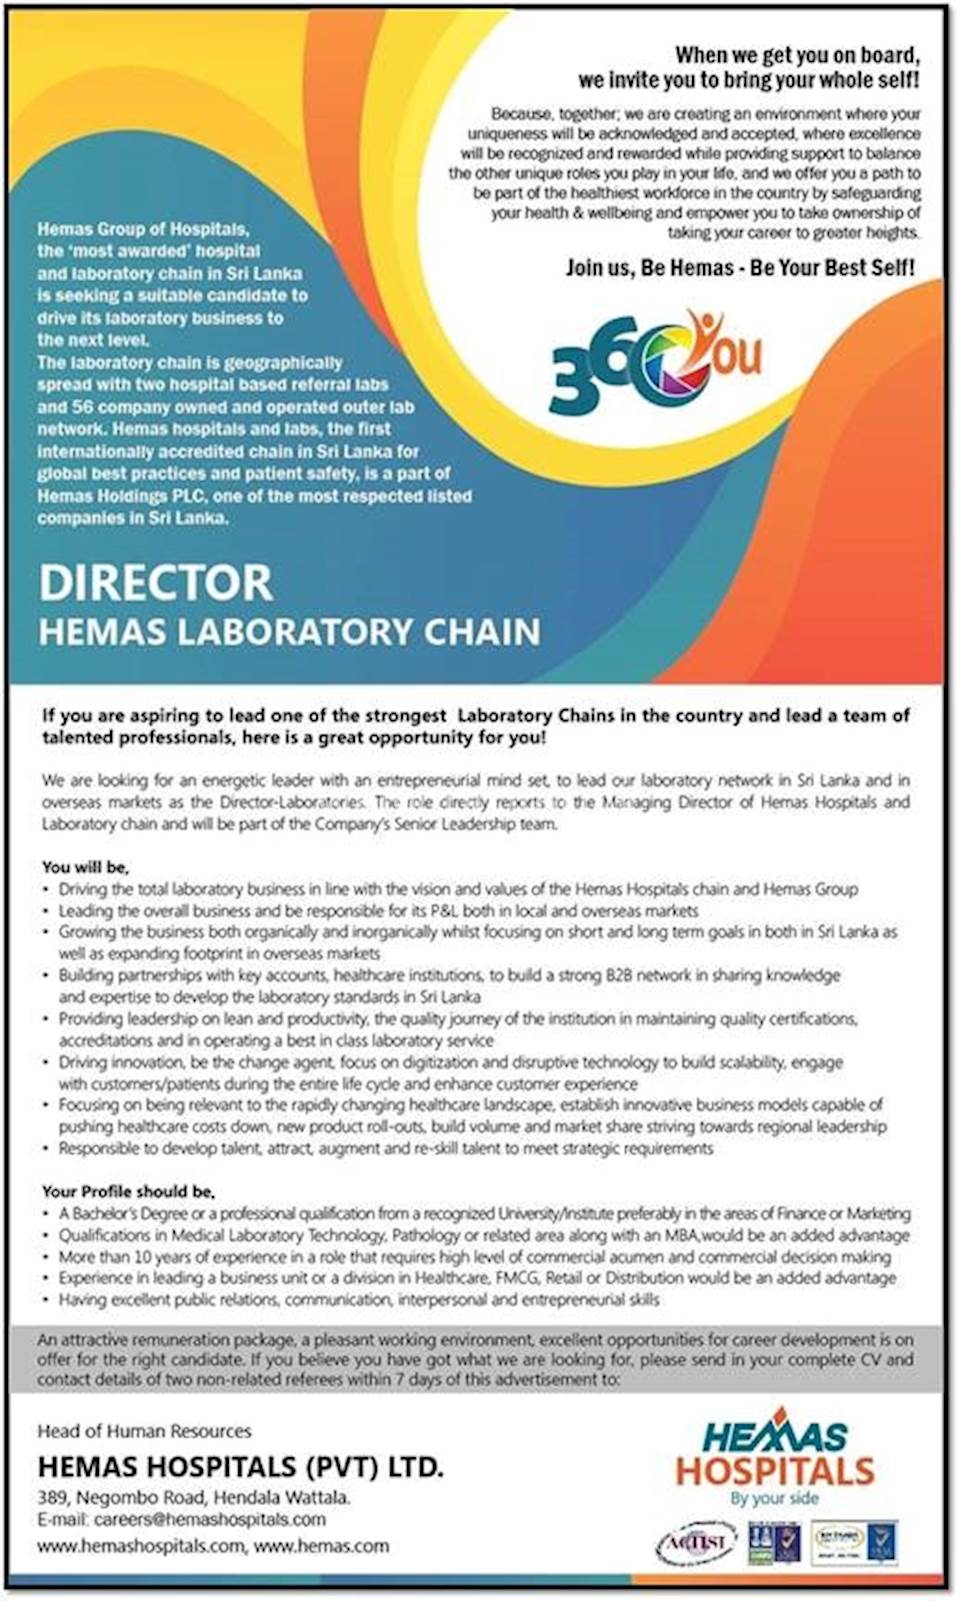 Director - Hemas Laboratory Chain